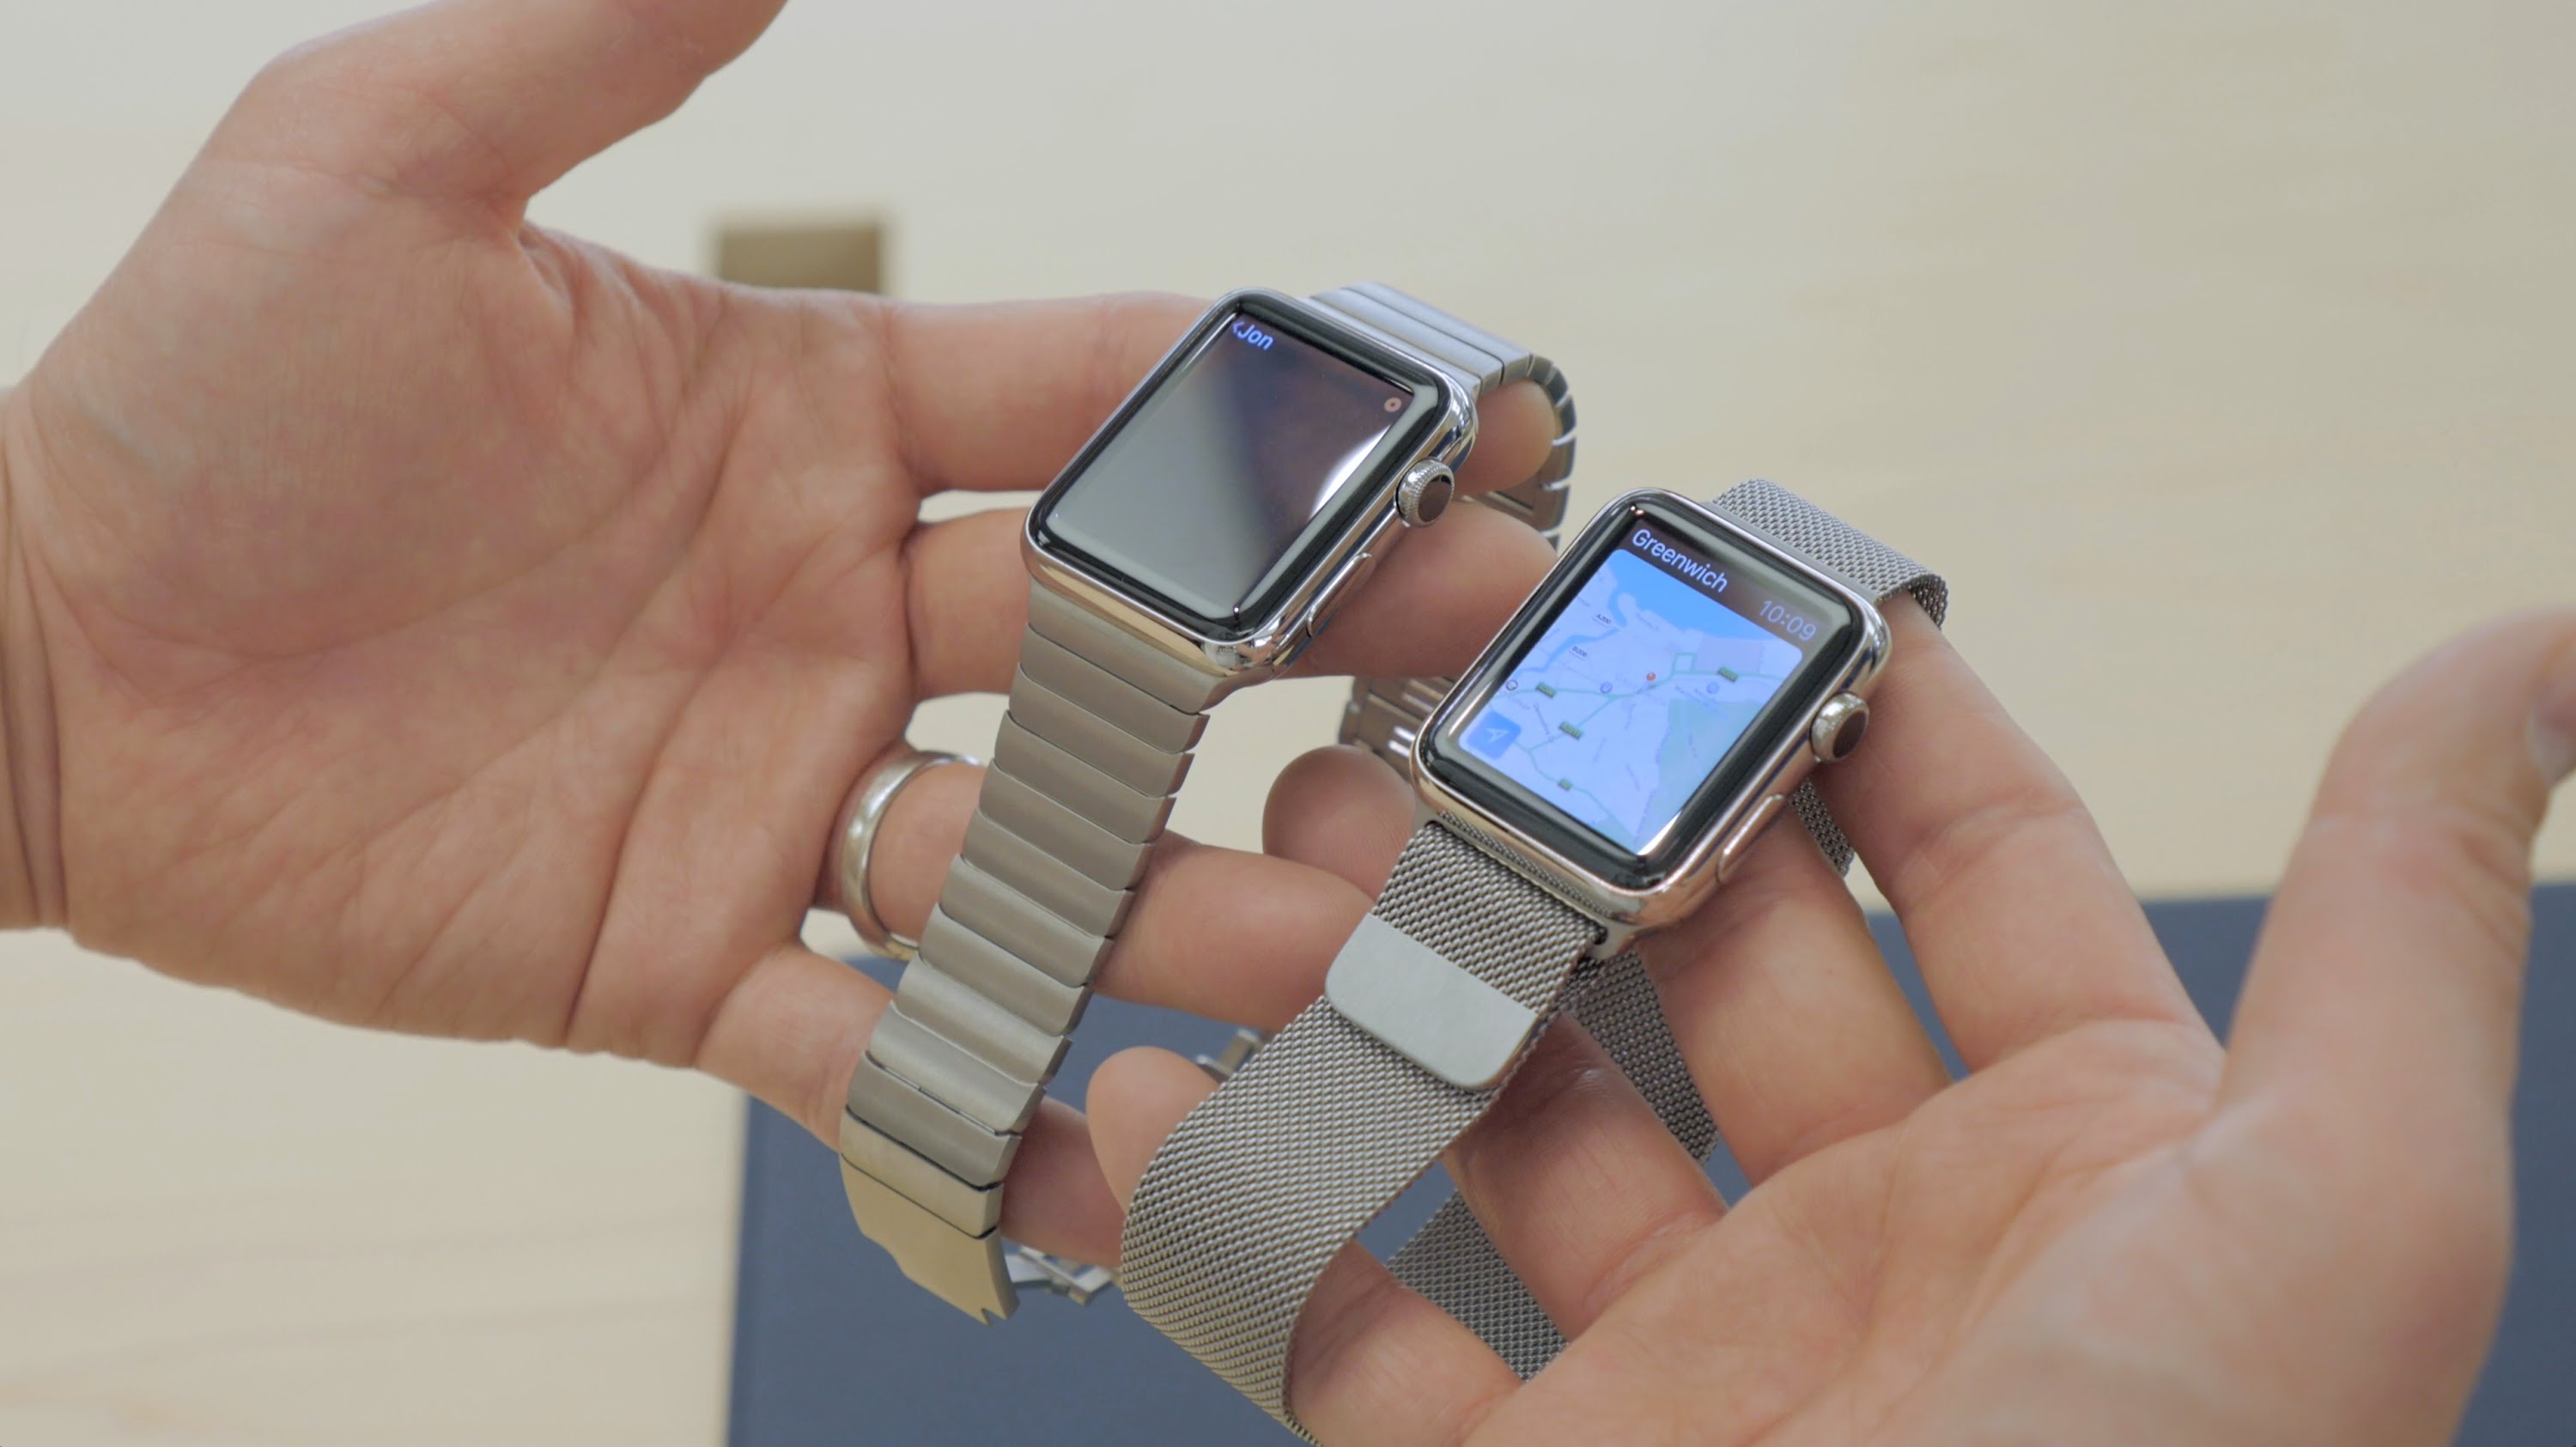 Series 3 38mm. Apple watch Series 3 38mm. Apple watch 3 38 mm. Apple watch 1 38 mm. Apple watch 38mm vs 42mm.